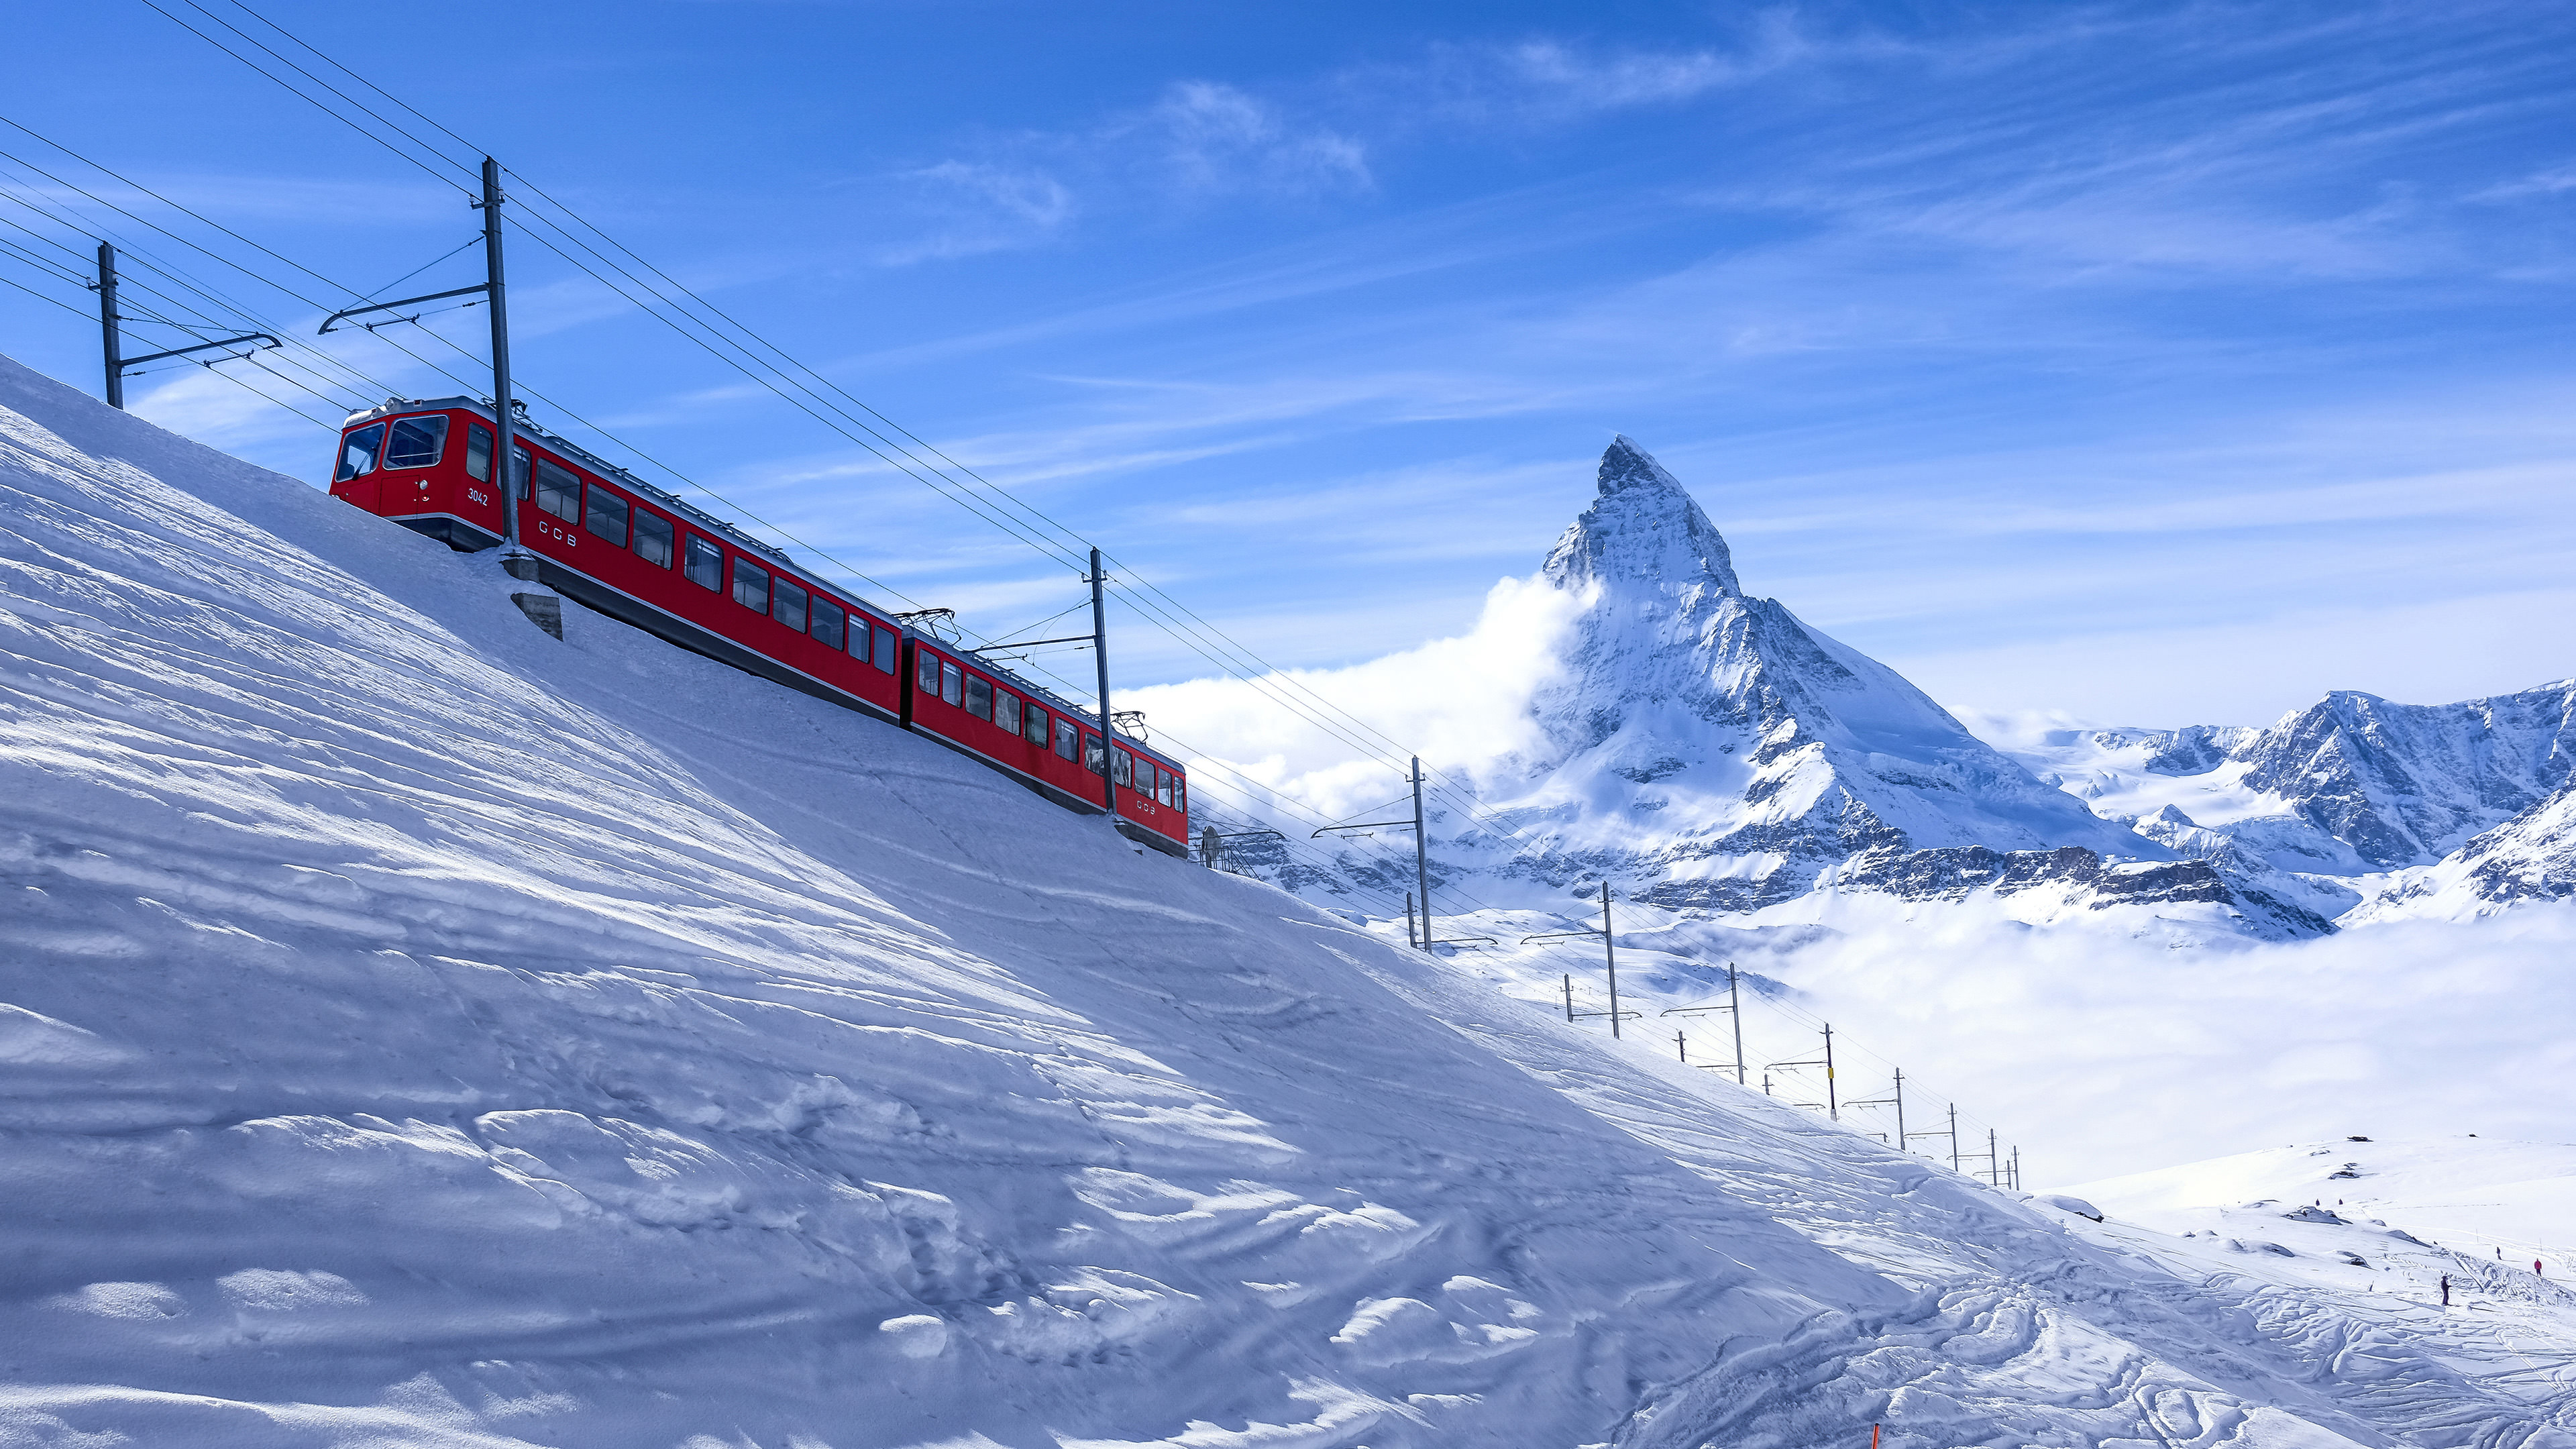 Wallpaper, Zermatt, Switzerland, Alps, snow, train, mountains